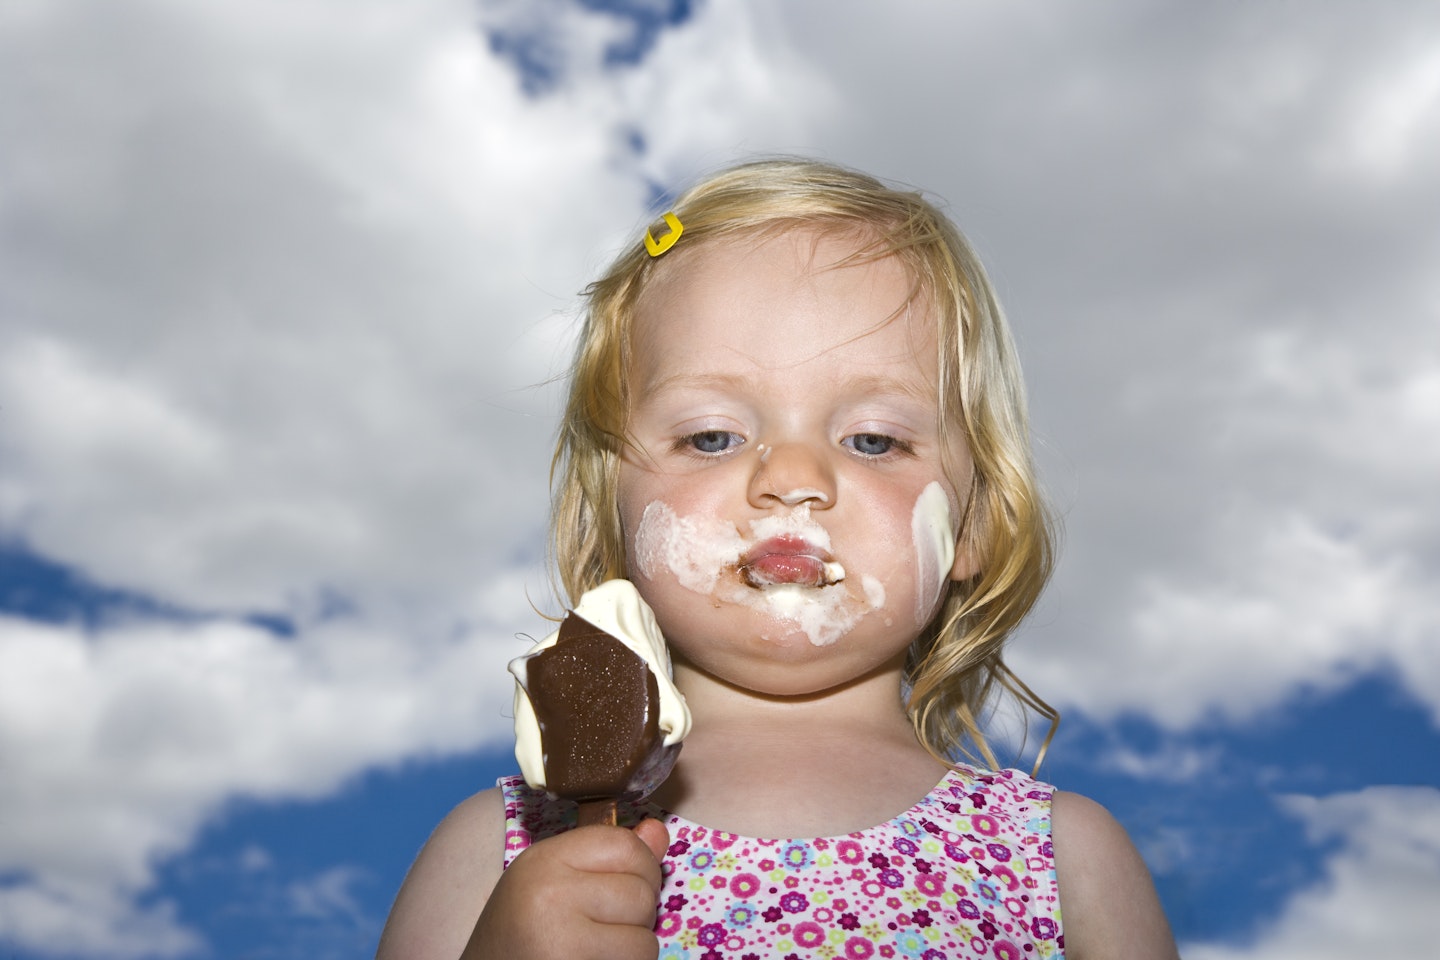 Child, ice cream, holiday